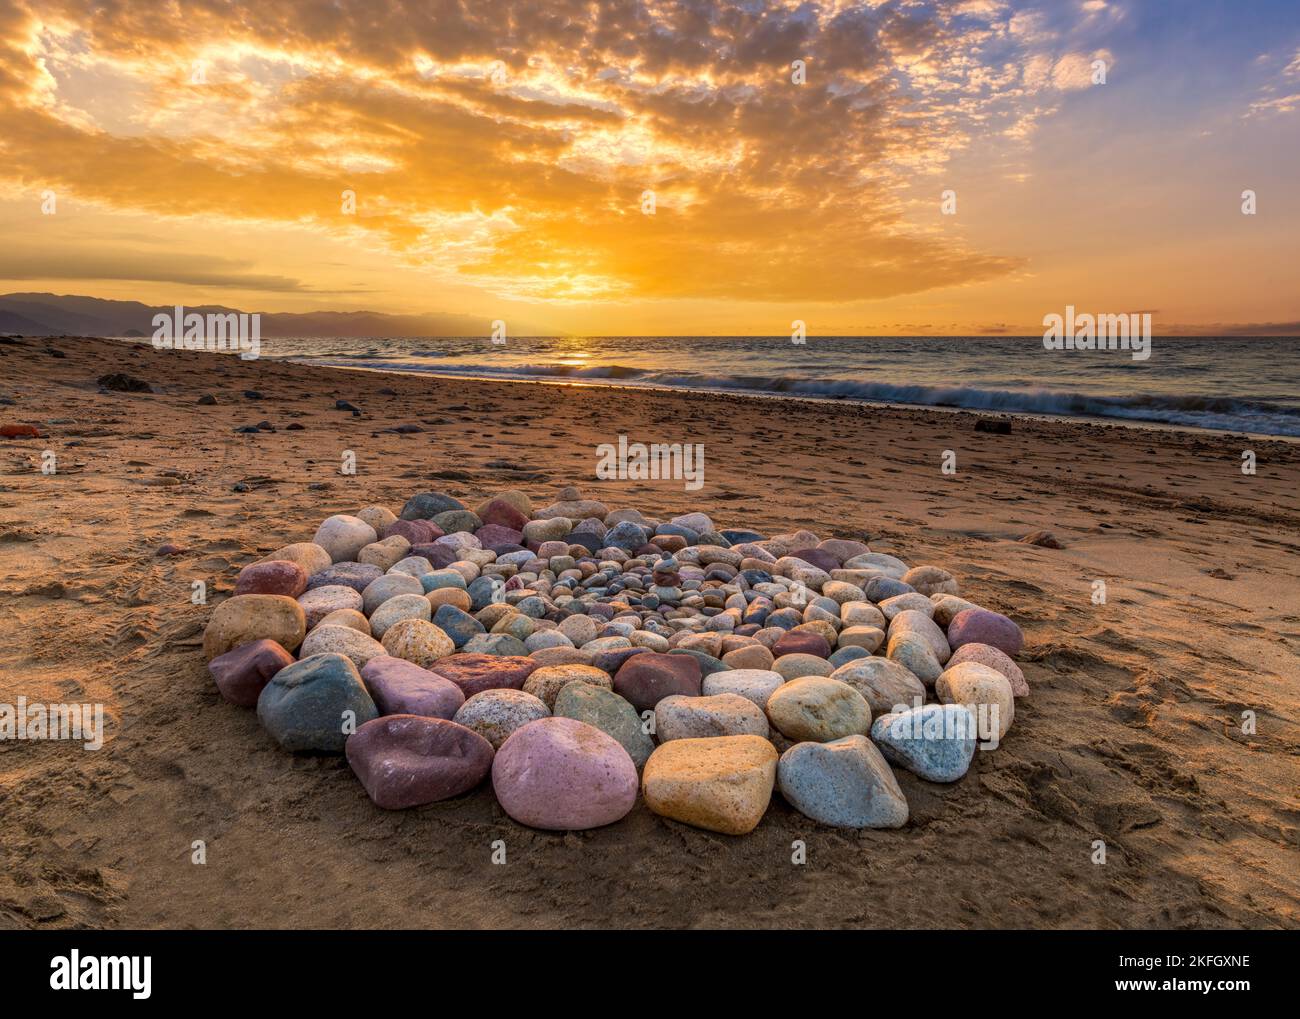 Während des Sonnenuntergangs am Strand werden rituelle Steine für spirituelle Zeremonien in Einem Kreis angeordnet Stockfoto